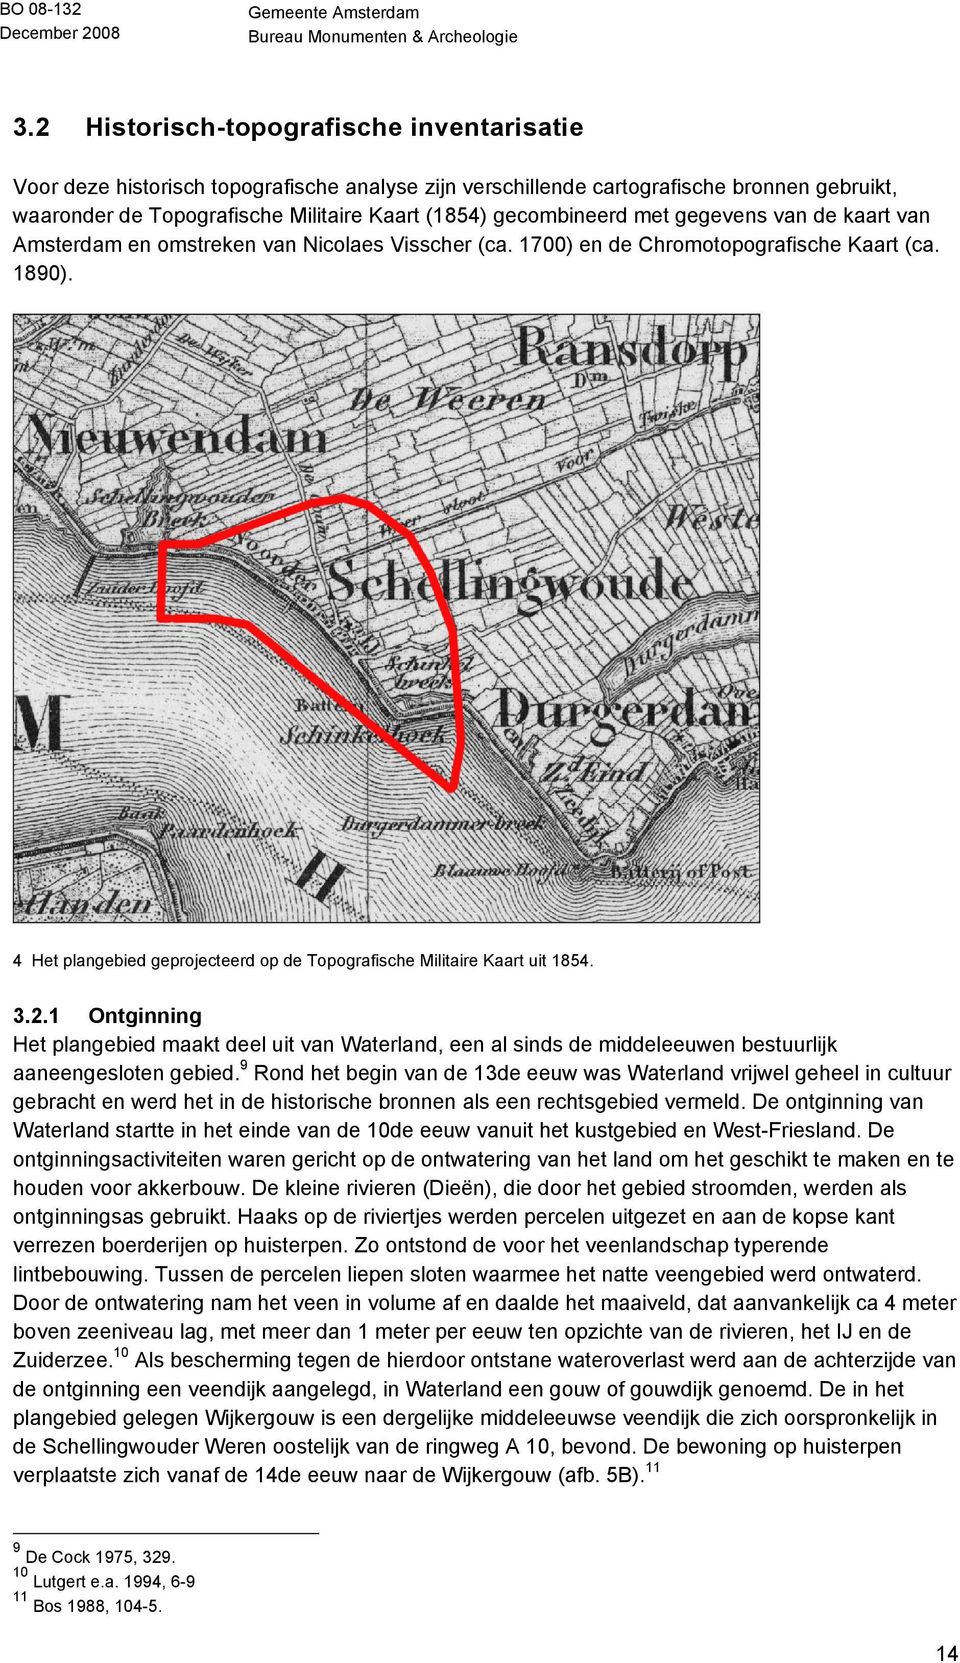 4 Het plangebied geprojecteerd op de Topografische Militaire Kaart uit 1854. 3.2.